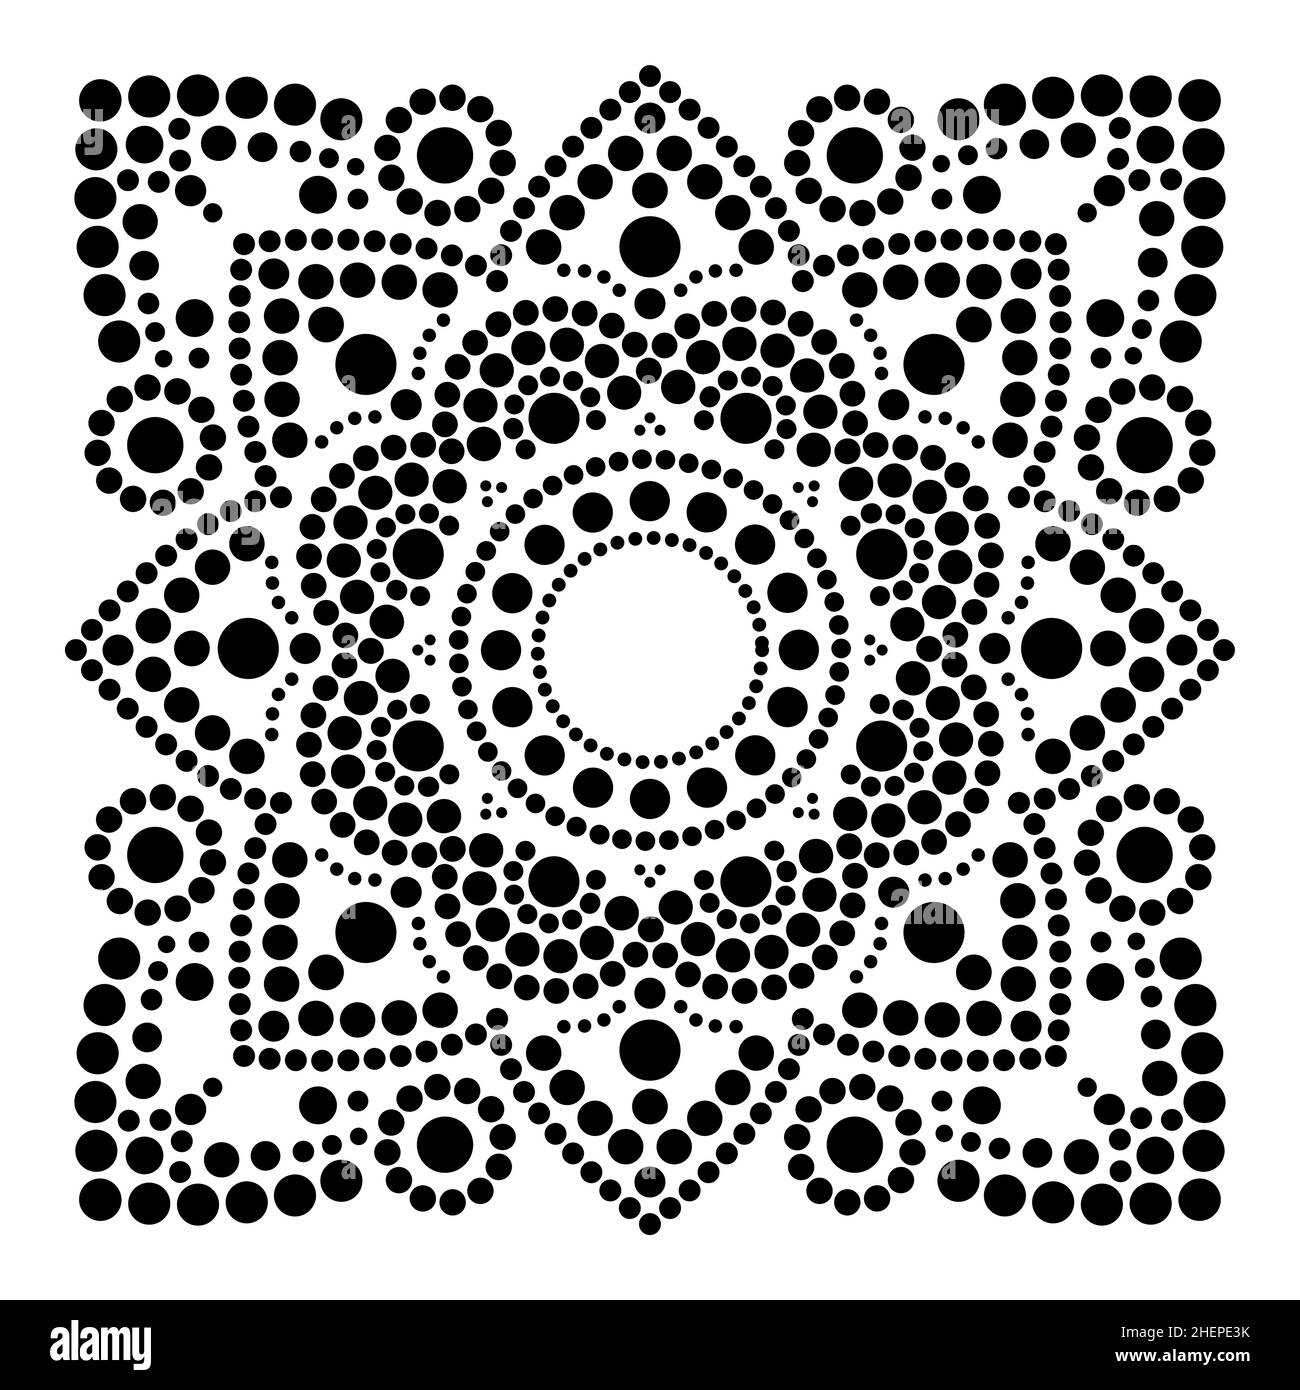 Vecteur d'art par points ethnique mandala en carré, traditionnel autochtone dessin de peinture par points de l'Australie en noir sur blanc Illustration de Vecteur